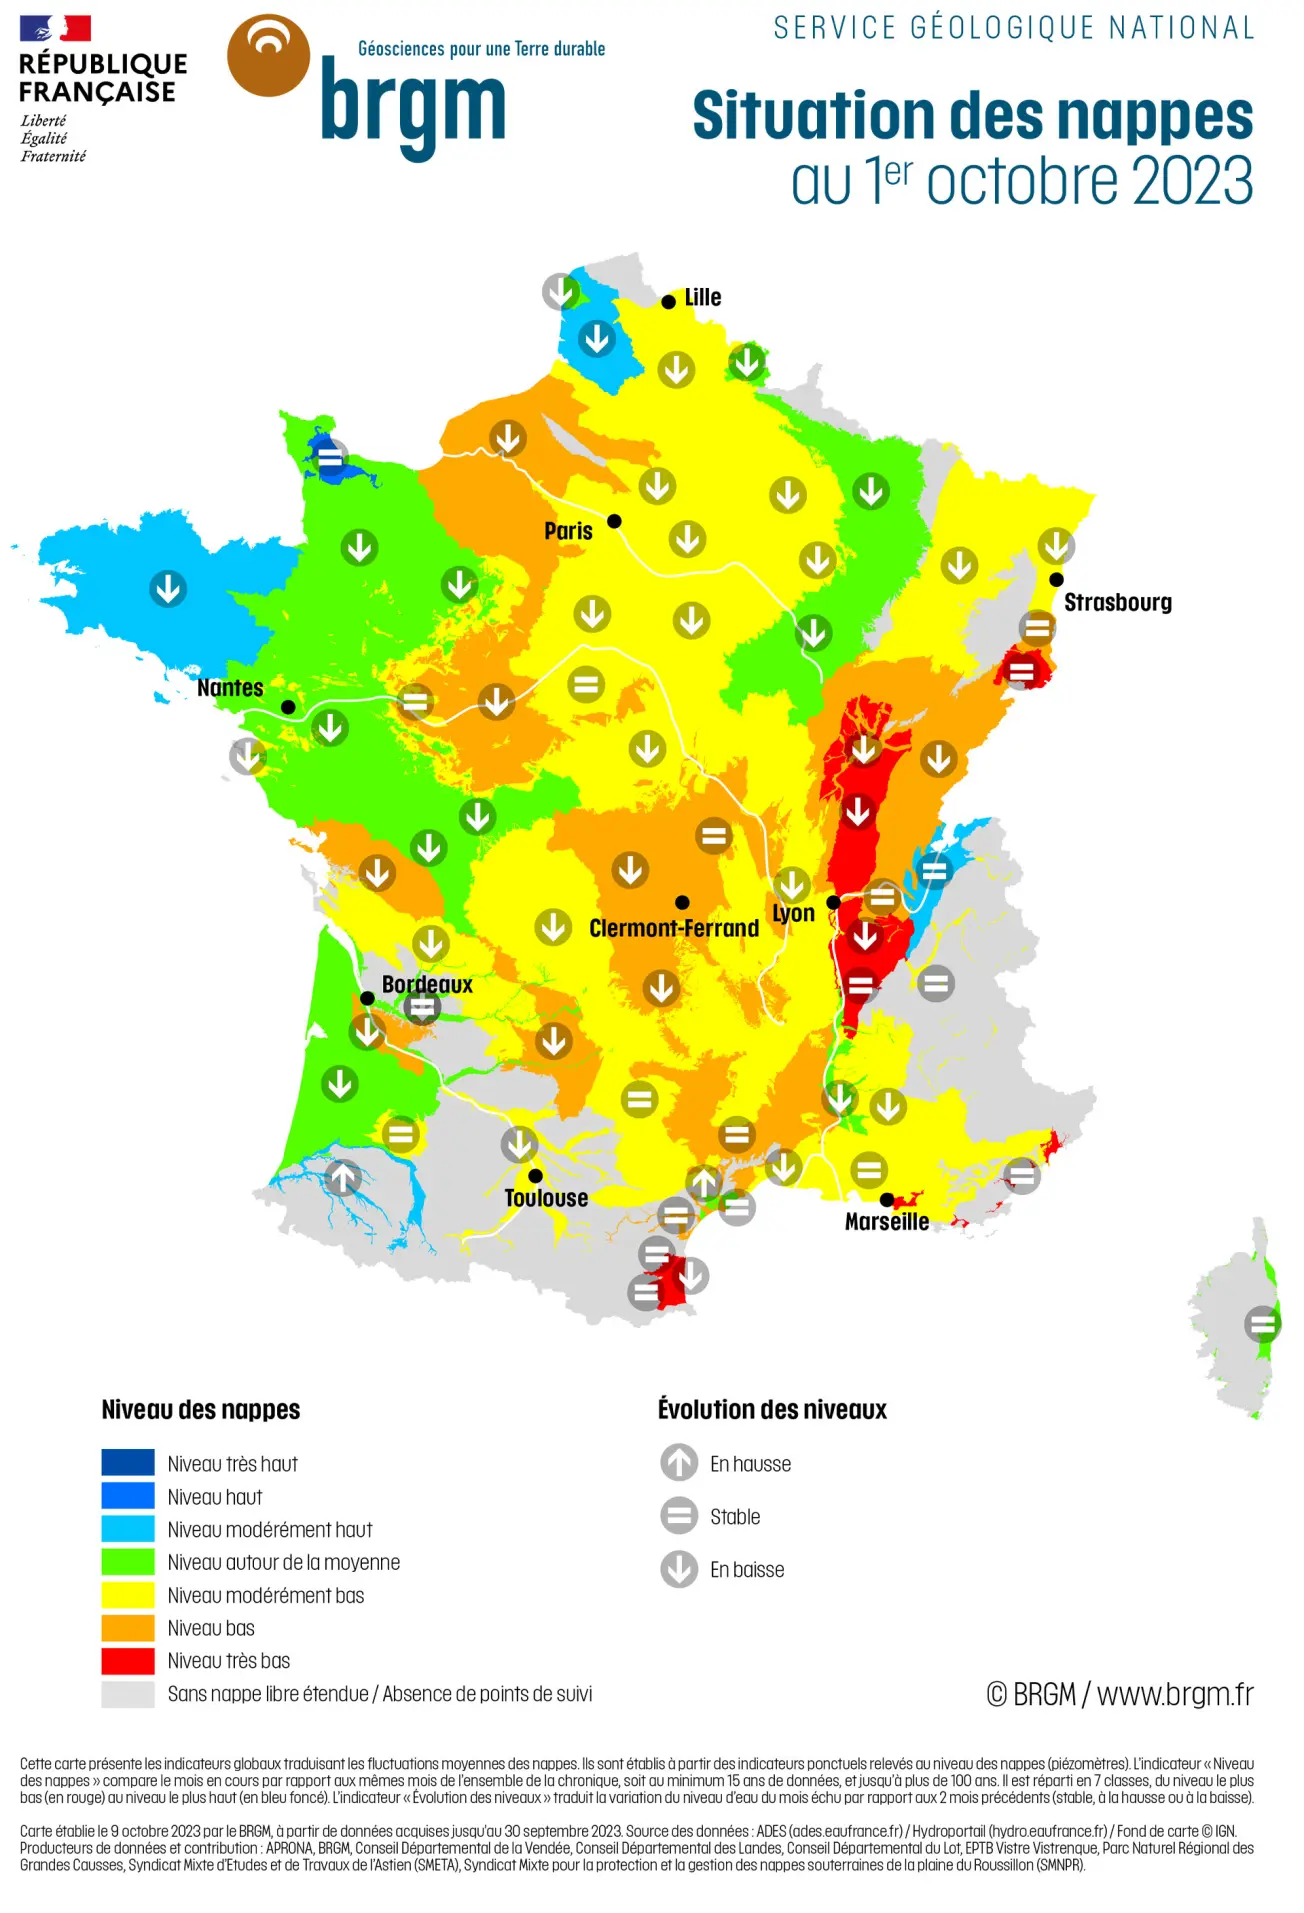 Carte de France hexagonale de la situation des nappes d'eau souterraine au 1er octobre 2023.